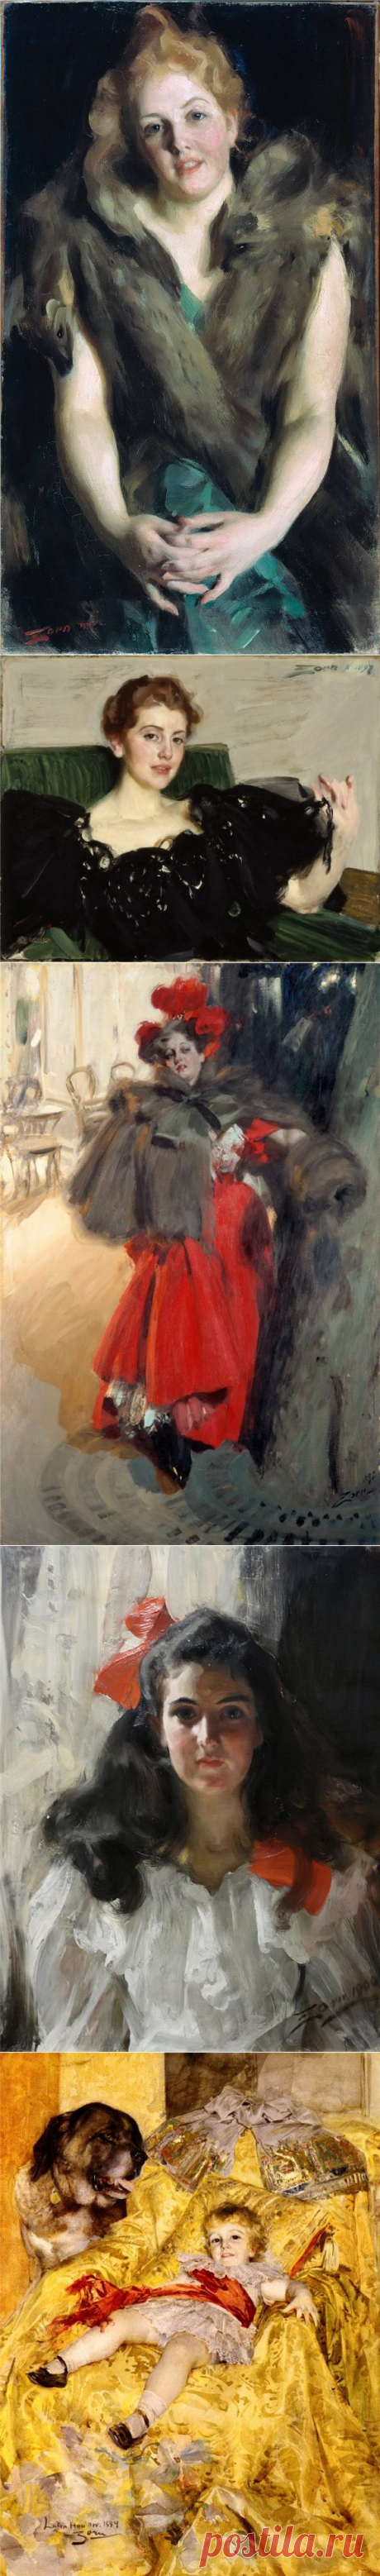 Anders Zorn - шведский живописец.